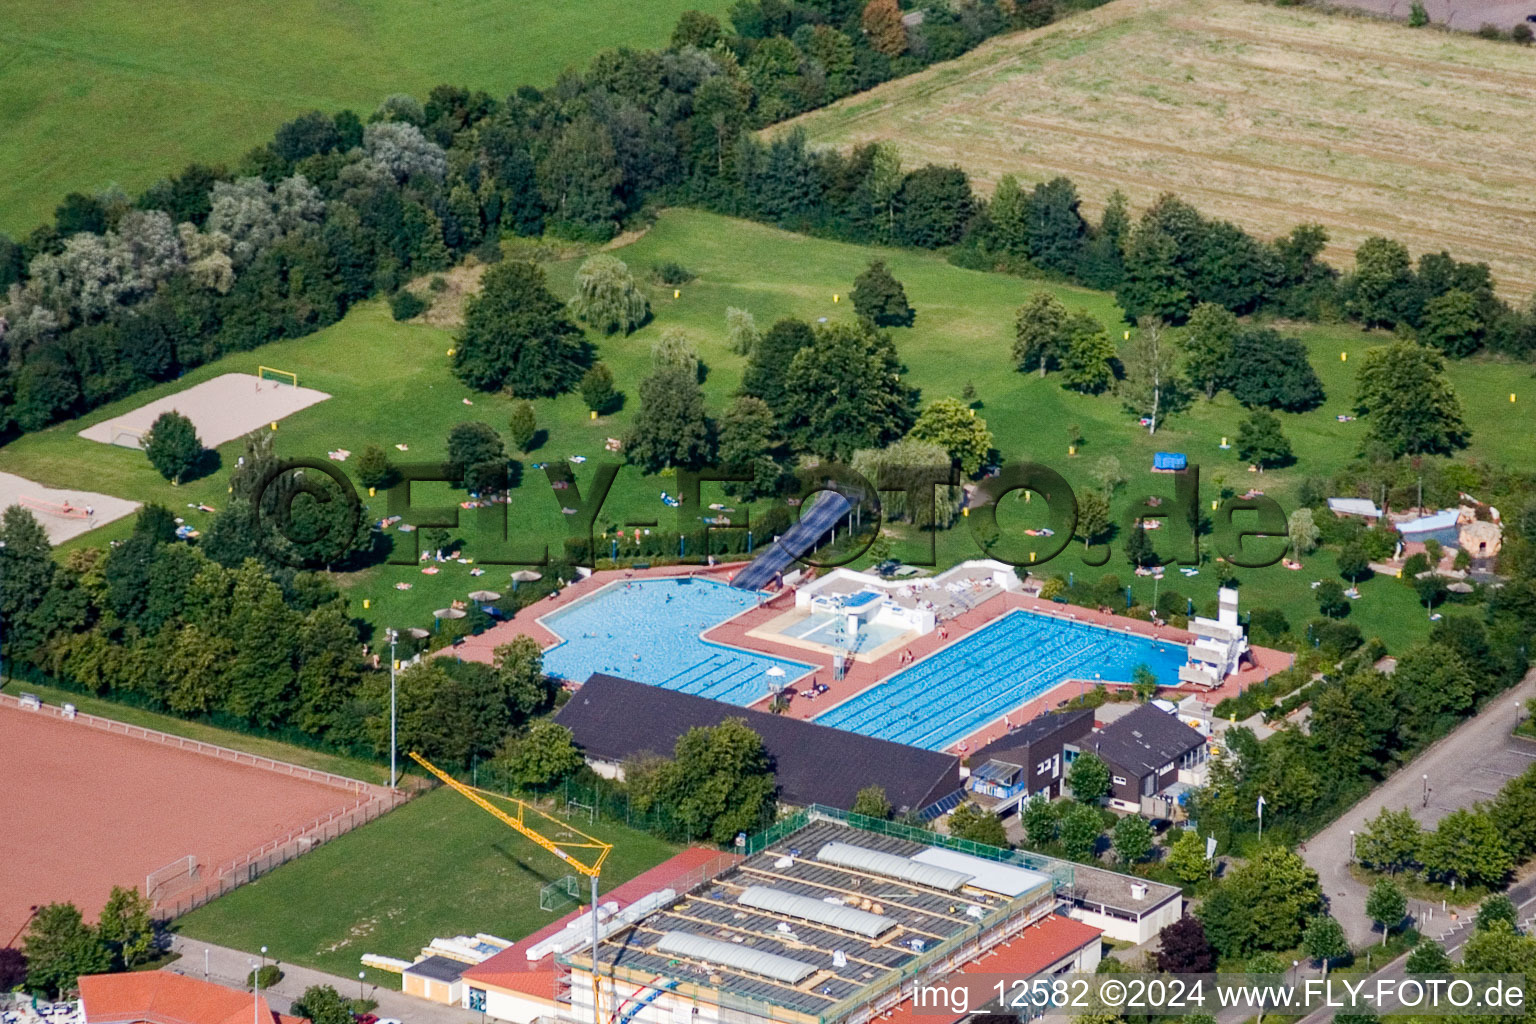 Vue aérienne de Piscine extérieure à Offenbach an der Queich dans le département Rhénanie-Palatinat, Allemagne